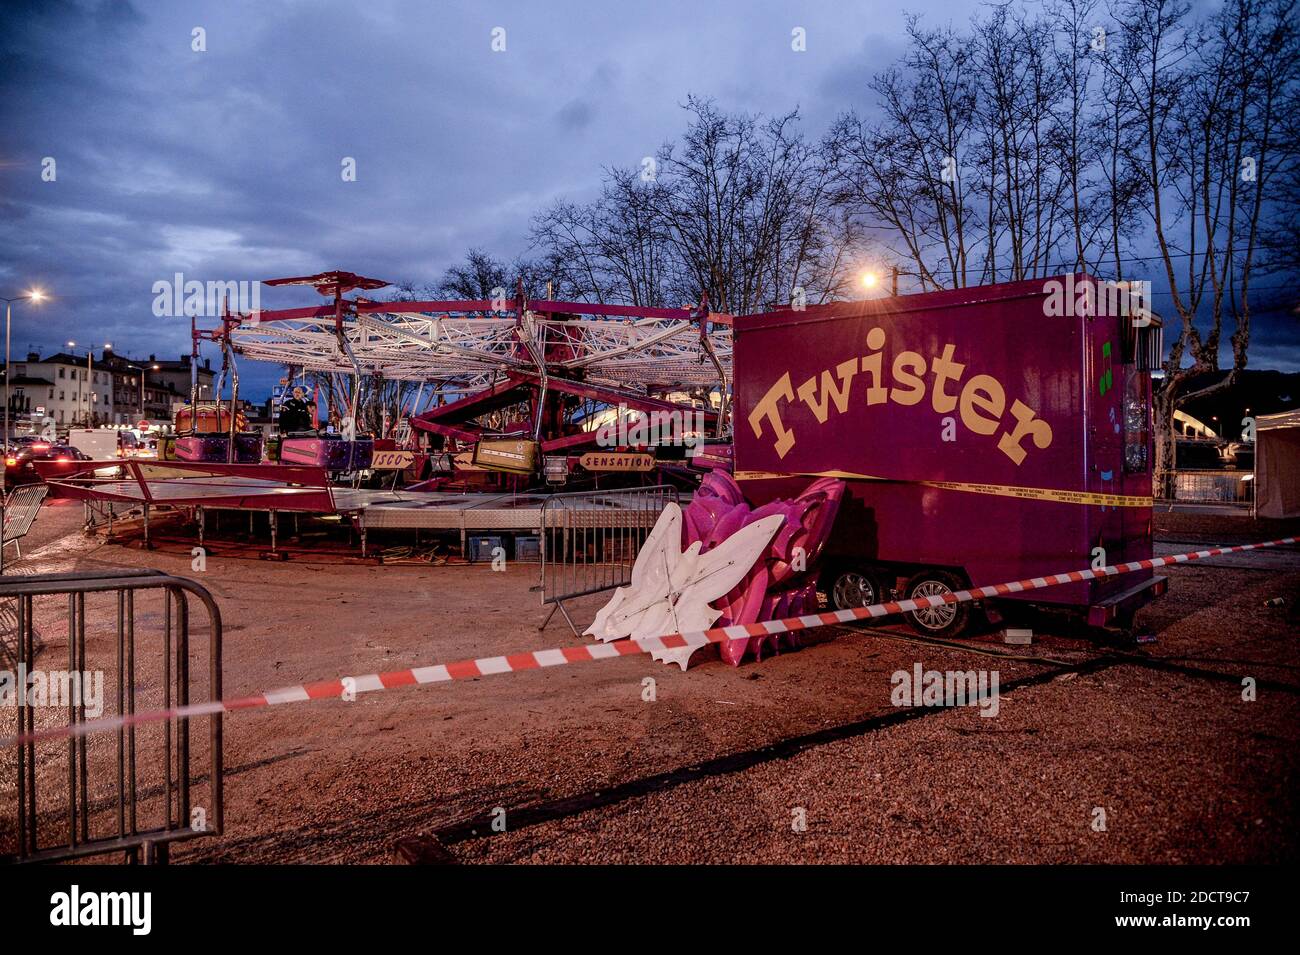 Un morto e 4 feriti, incluso un bambino di 8 anni, durante un incidente di giostra in una fiera a Neuville sur Saone, vicino a Lione, Francia, il 31 marzo 2018. Foto di Julien Reynaud/APS-Medias/ABACAPRESS.COM Foto Stock